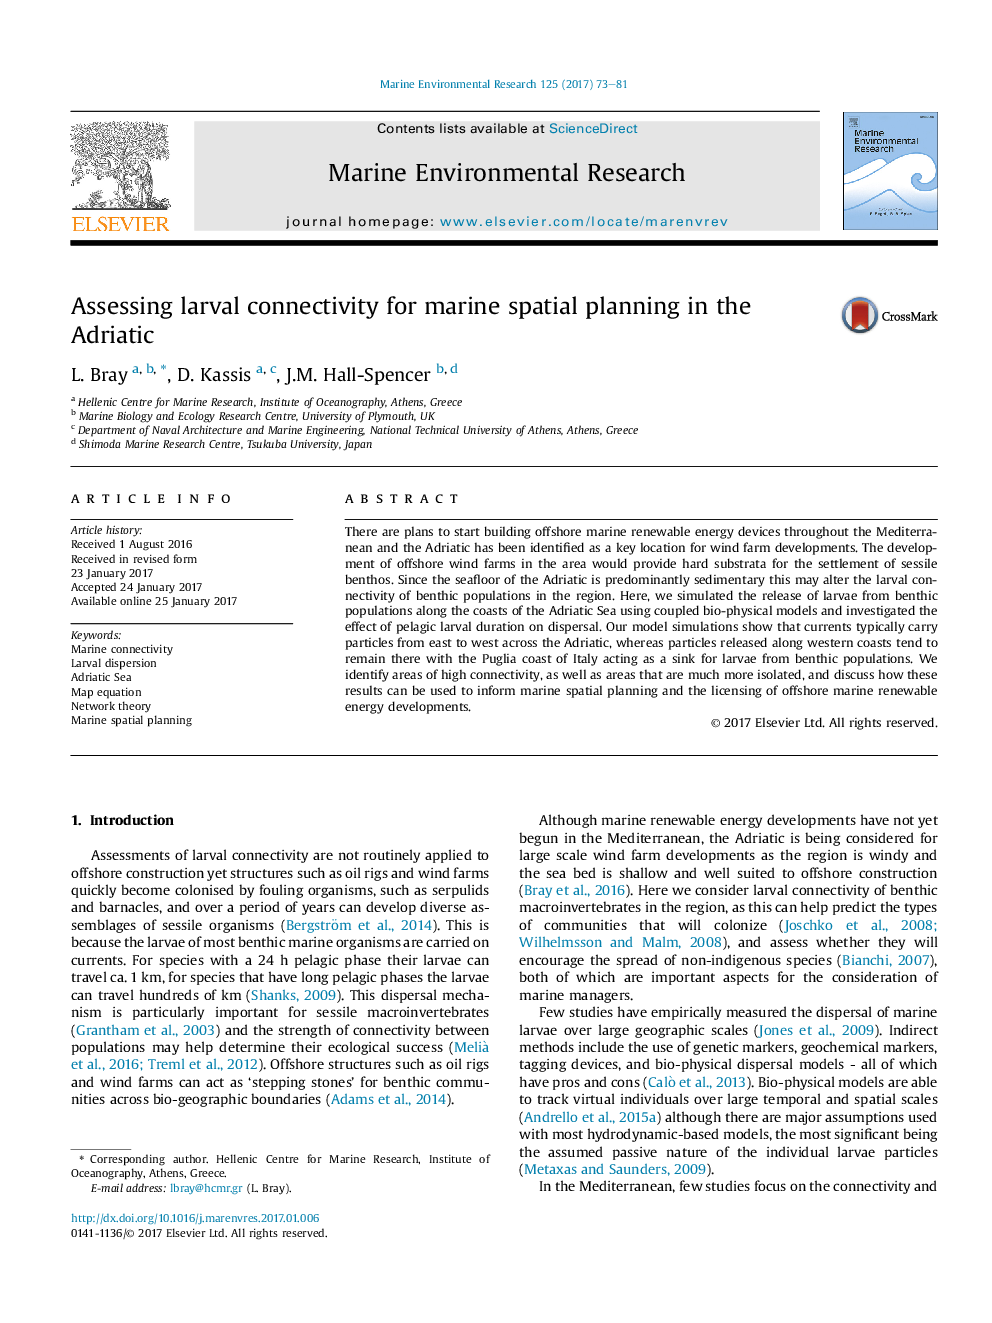 ارزیابی ارتباطات لارو برای برنامه ریزی فضایی دریایی در آدریانک 